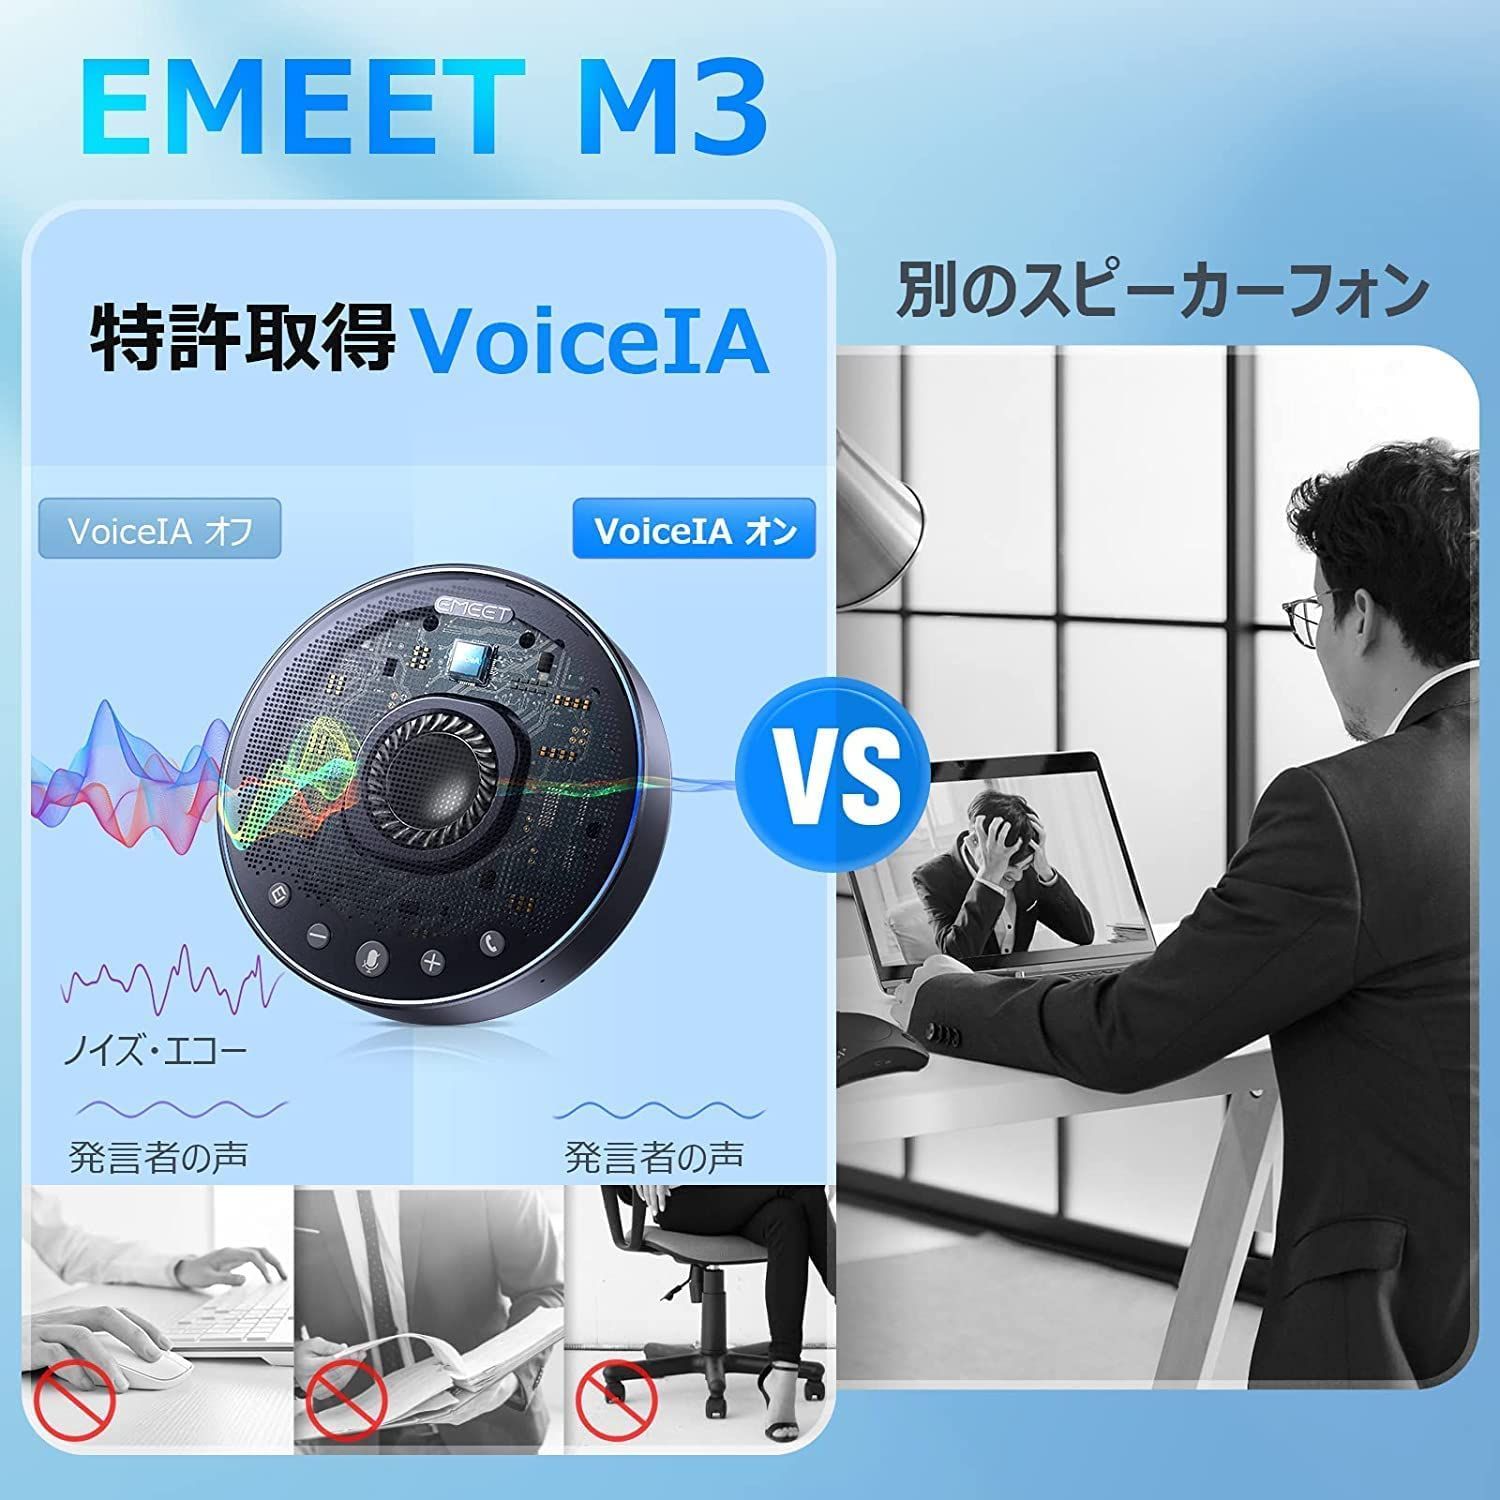 【夏セール中|日本正規販売店|2年保証|特典付き】 Emeet M3 スピーカーフォン 会議用 Bluetooth対応 マスピーカー オンライン会議 USB 全方向集音 LED指示 ノイズキャンセリング テレワーク  Bluetooth Zoom イミート-7